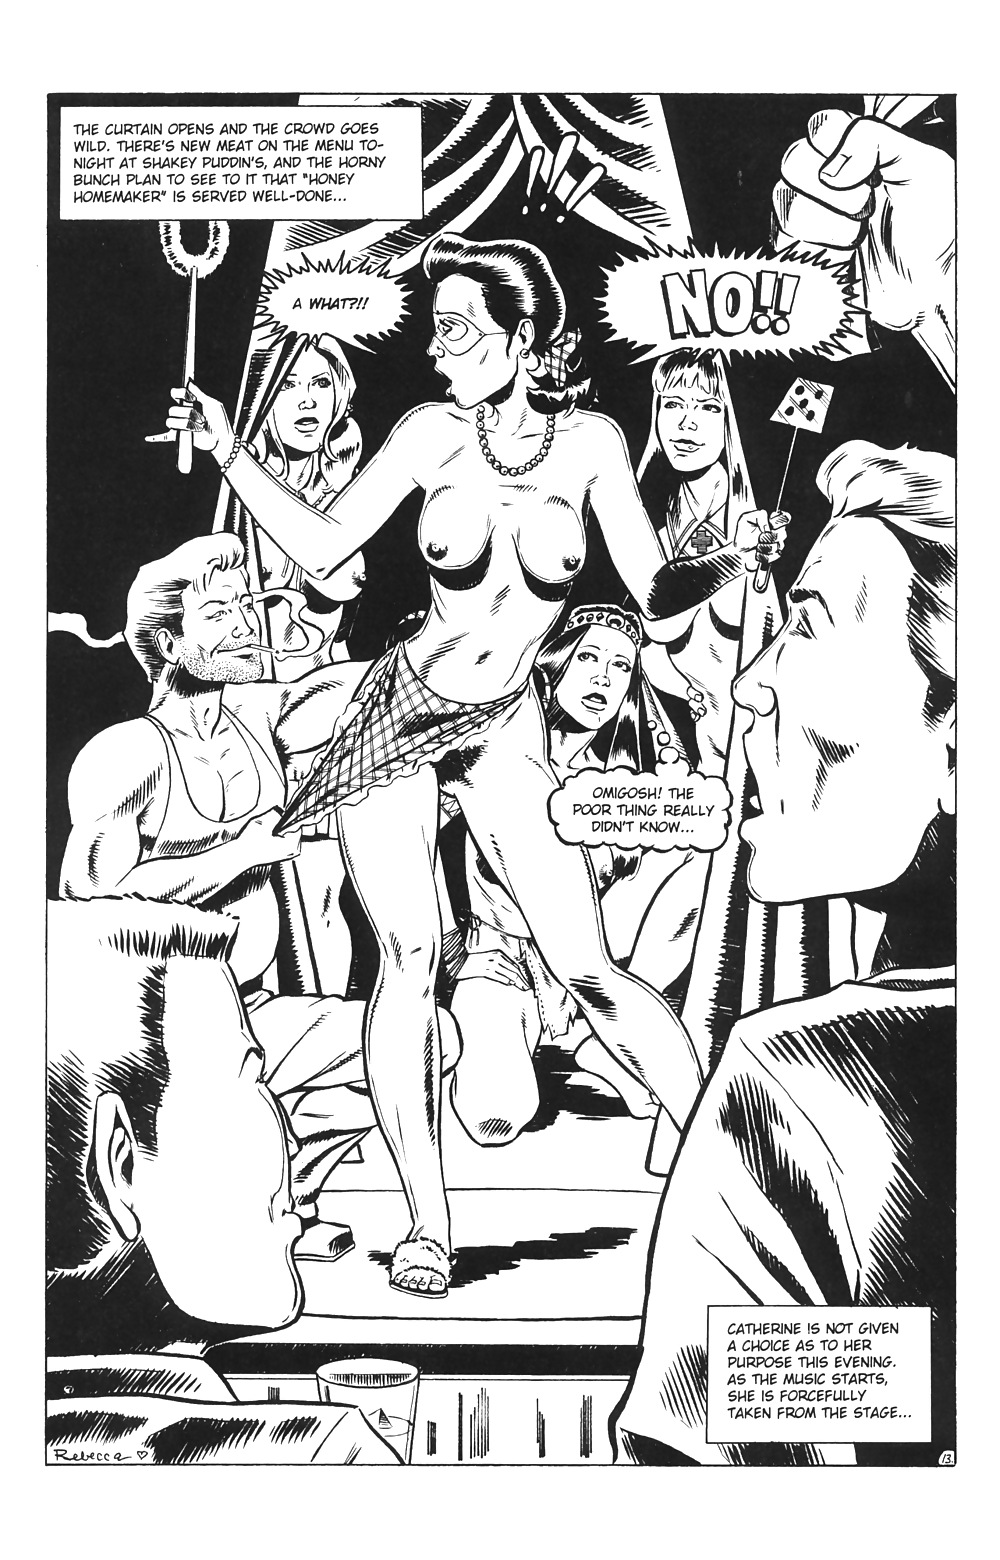 Ménagères En Jeu # 03 - Comics Eros Par Rebecca - Octobre 2001 #25714009